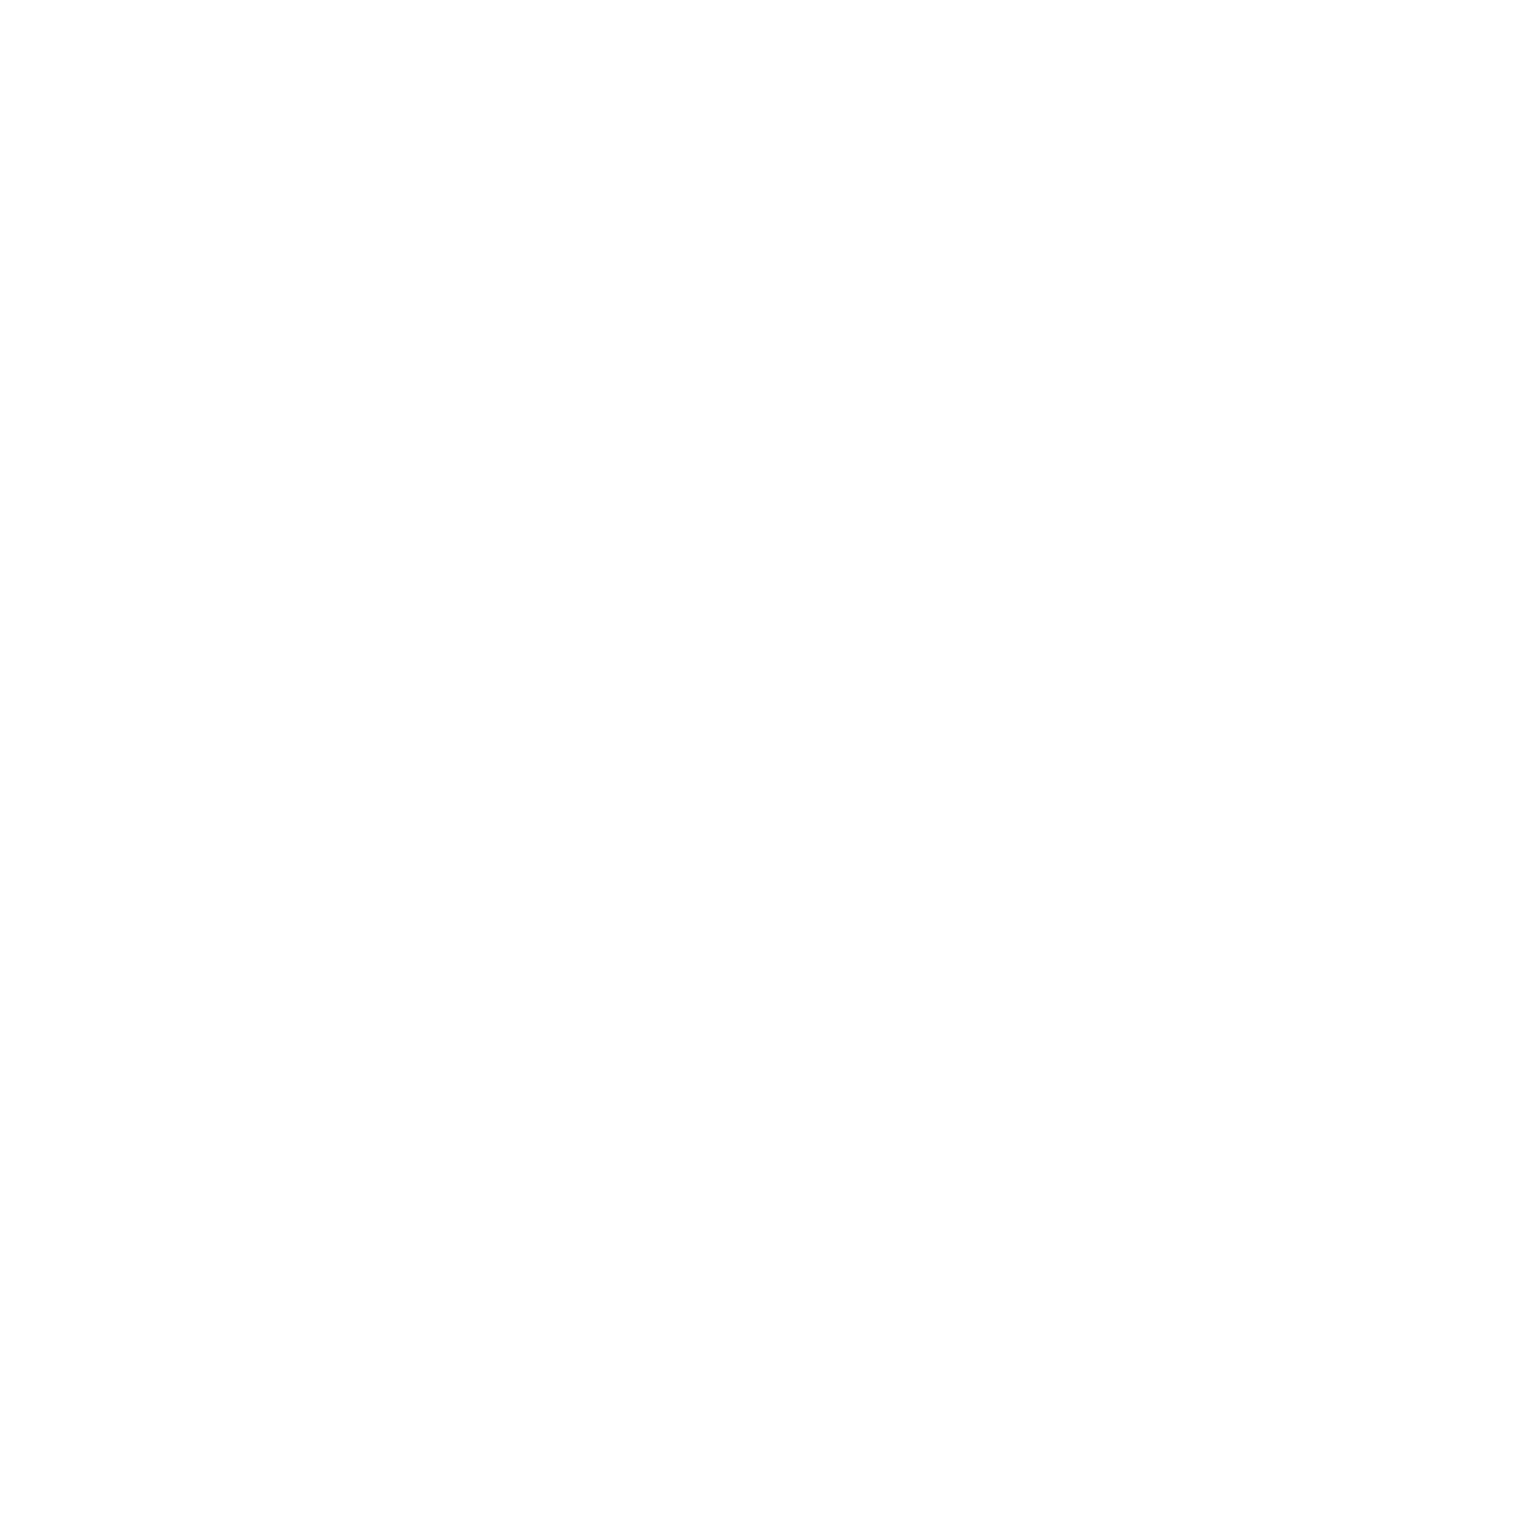 MoneyLion logo for dark backgrounds (transparent PNG)